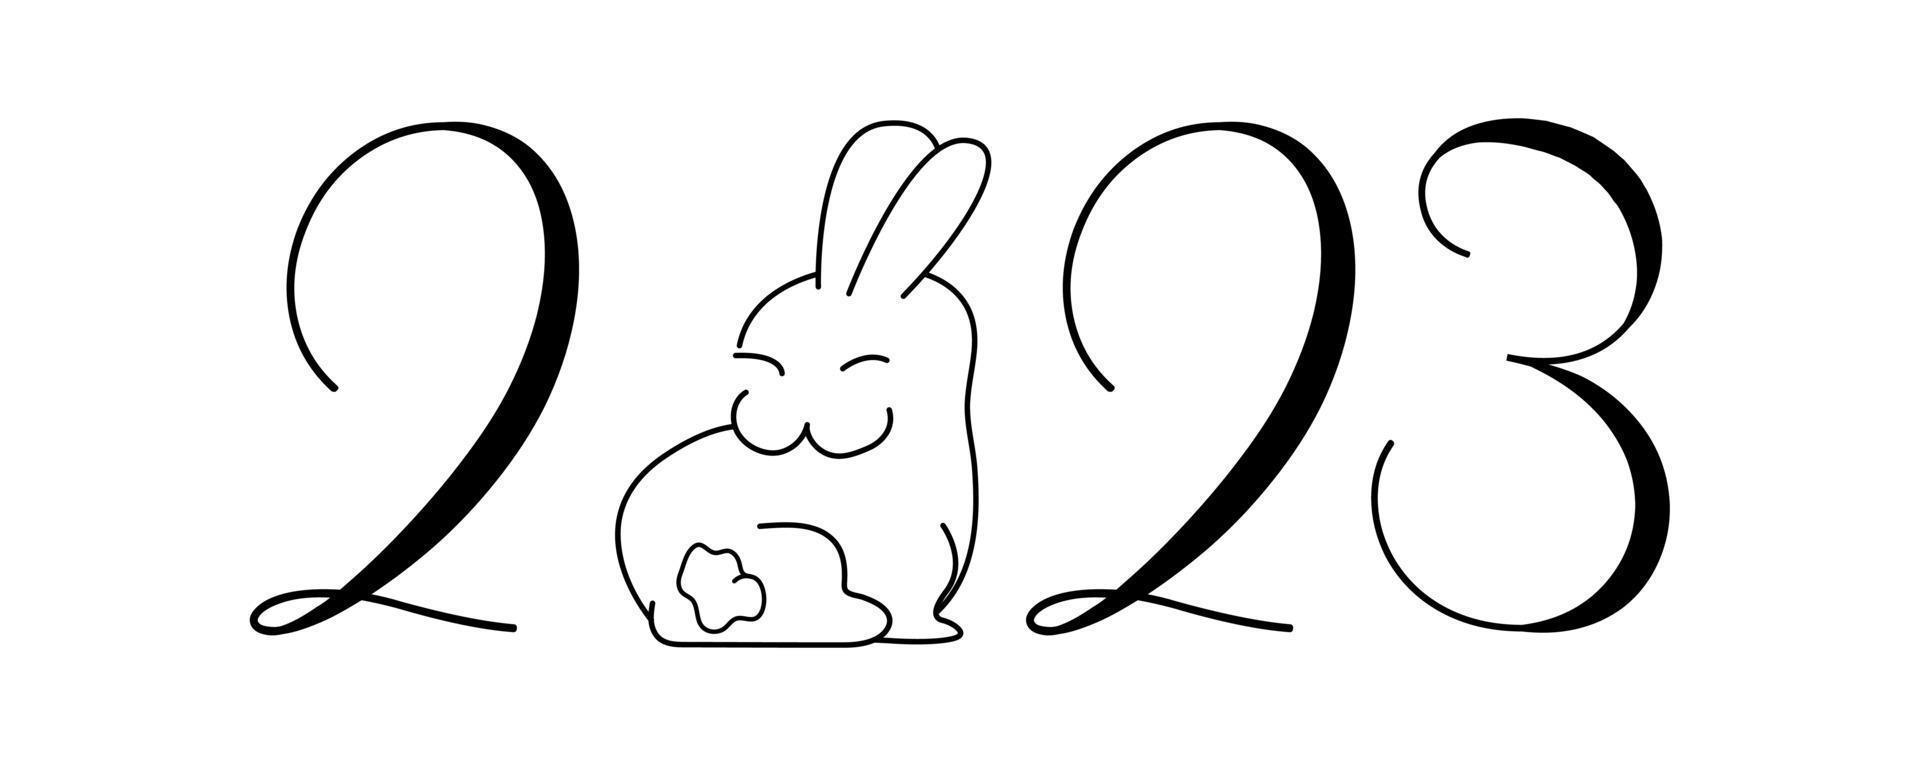 feliz año nuevo. signo del horóscopo del conejo. conejo del horóscopo chino con 2023. ilustración de vector de minimalismo plano. feliz año nuevo chino 2023.